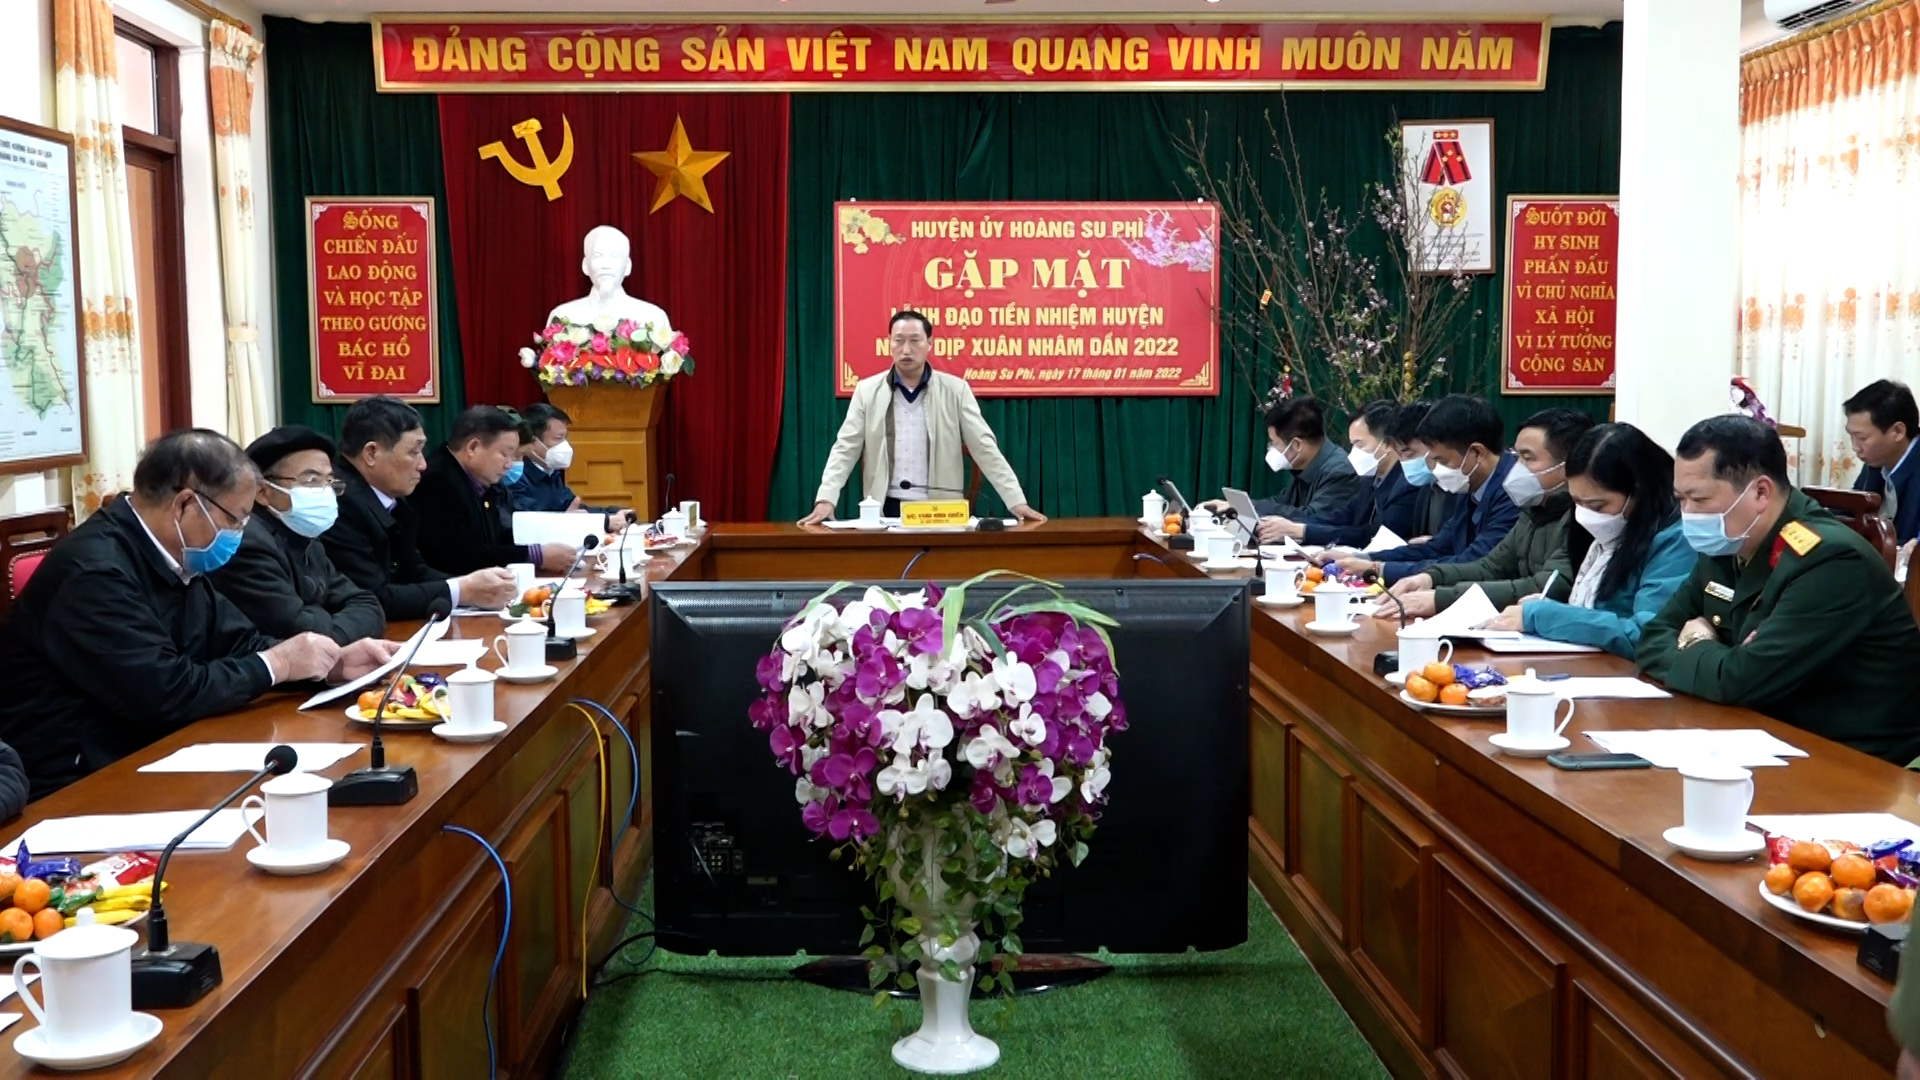 Ban Thường vụ Huyện ủy Hoàng Su Phì tổ chức gặp mặt các đồng chí nguyên lãnh đạo huyện qua các thời kỳ.